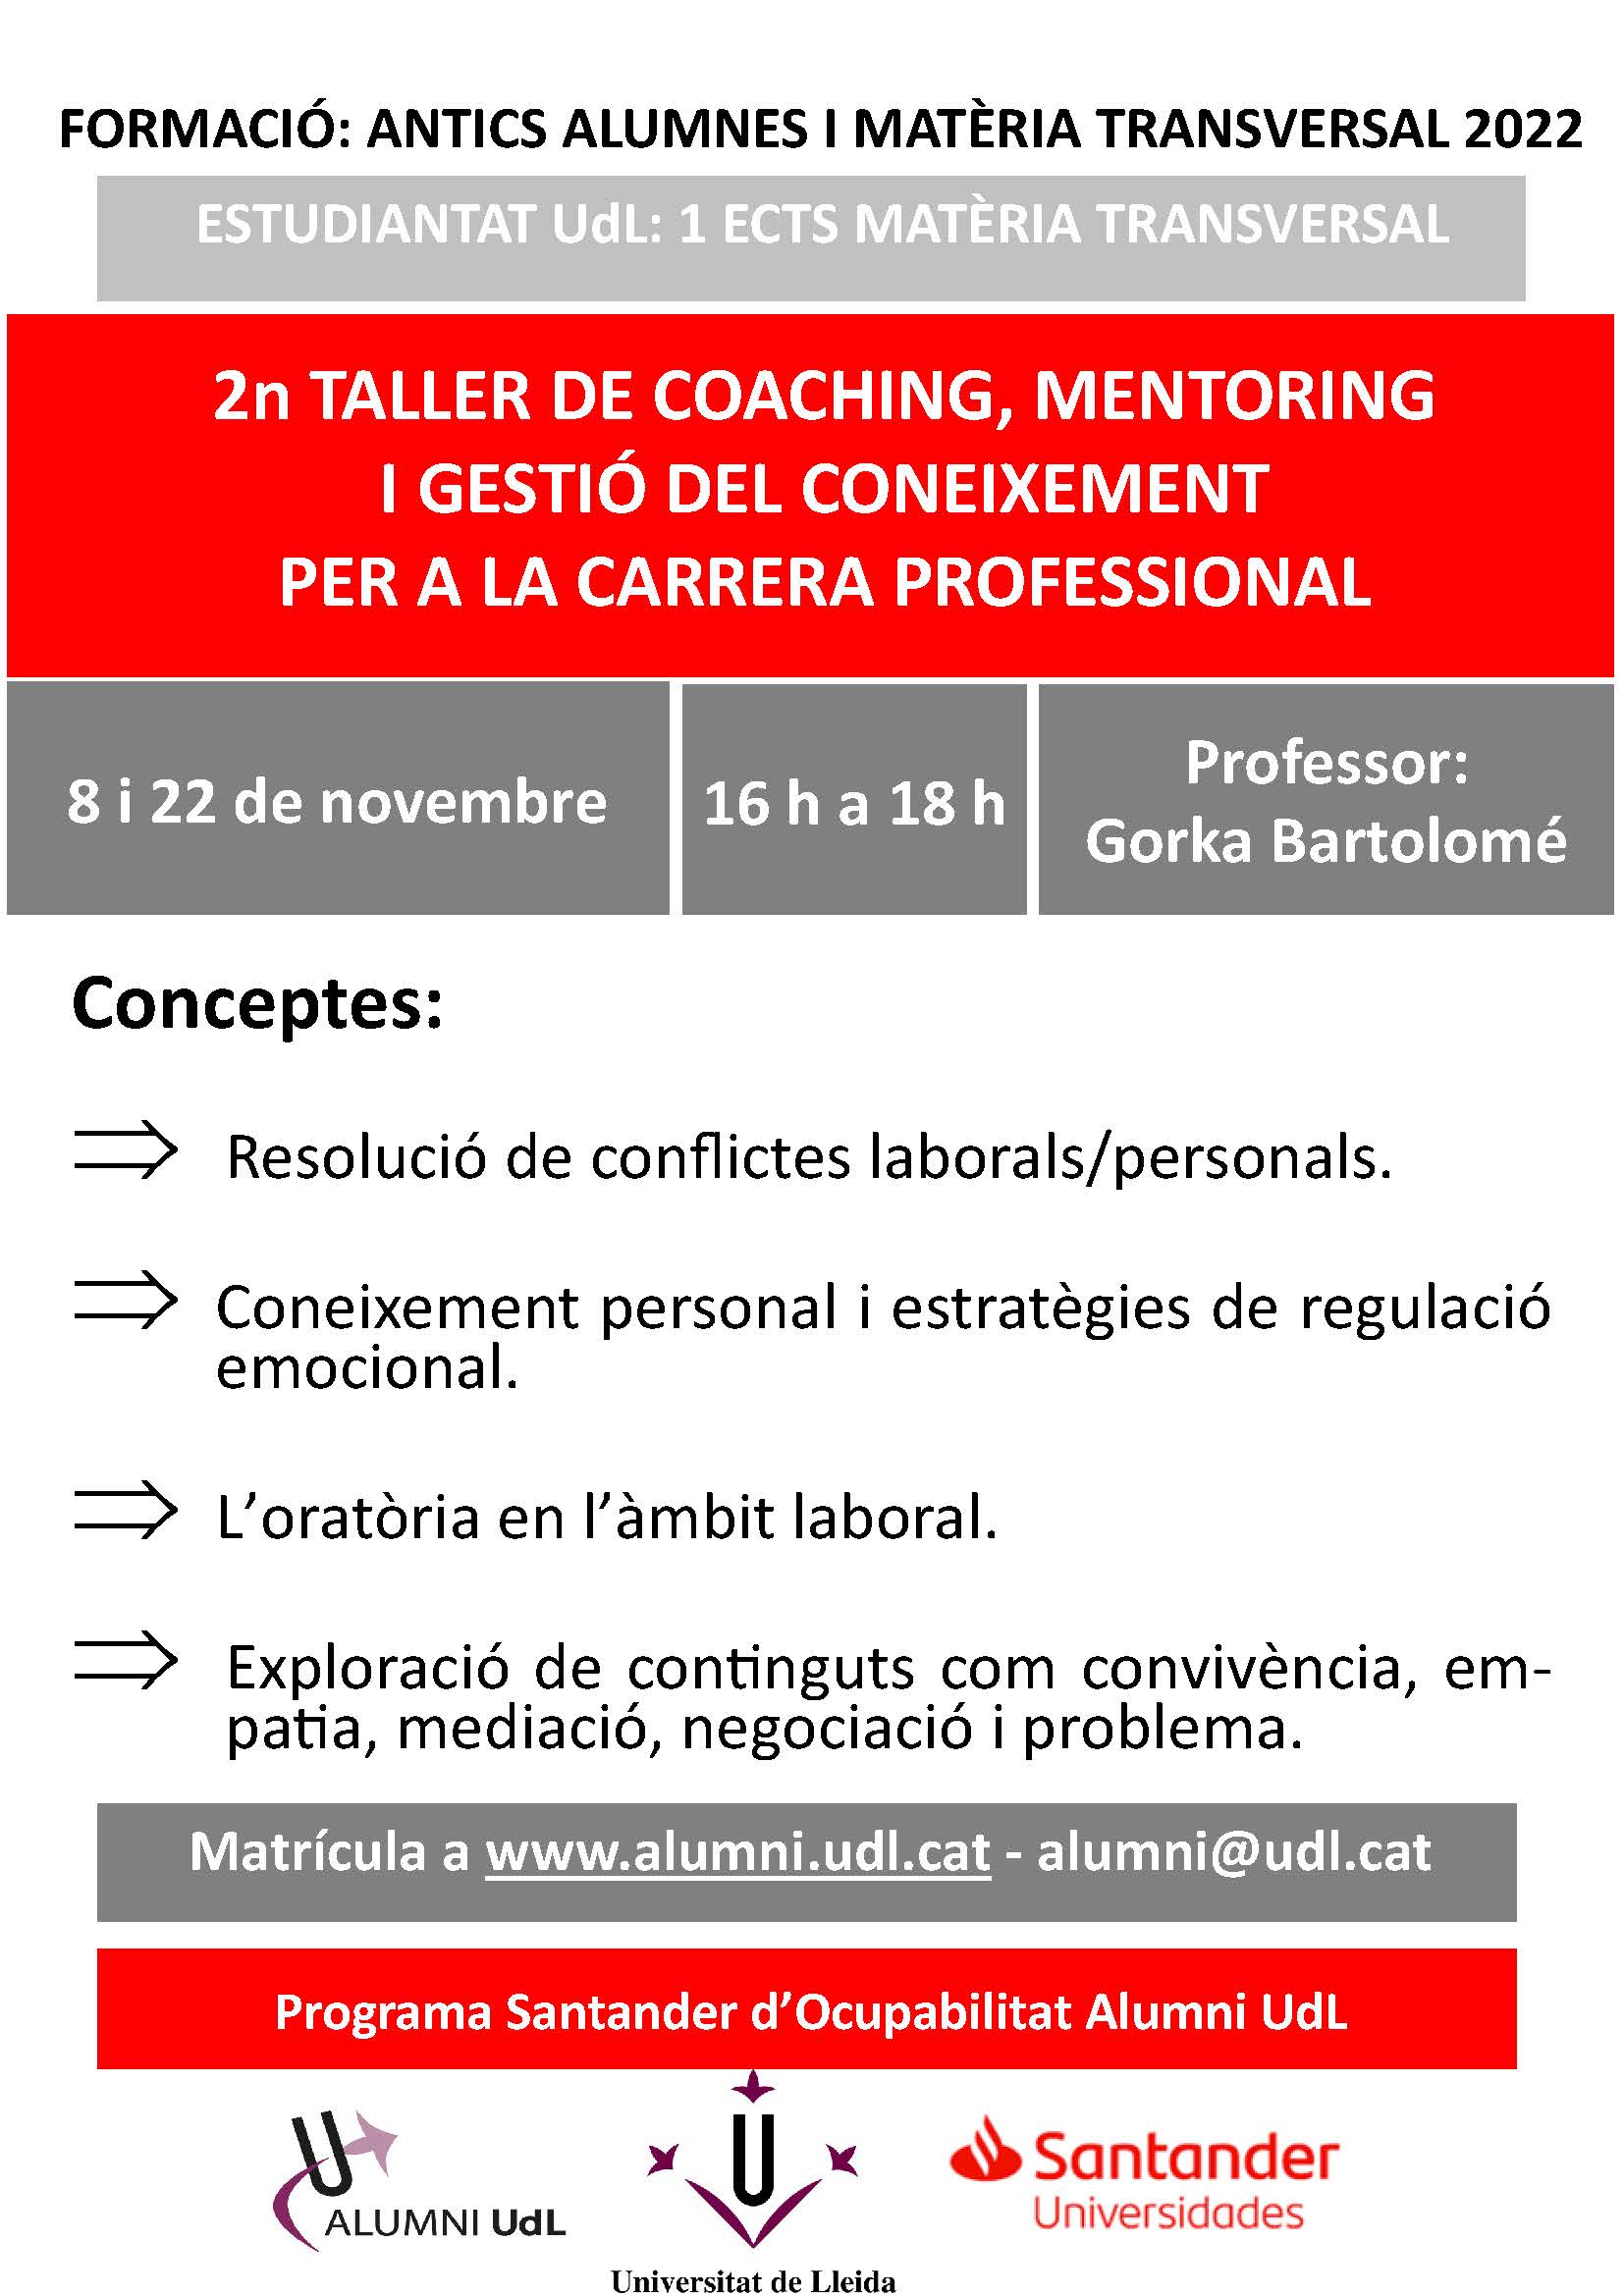 Taller de coaching, mentoring i gestió del coneixement per la vida universitària i la carrera professional 2022-23